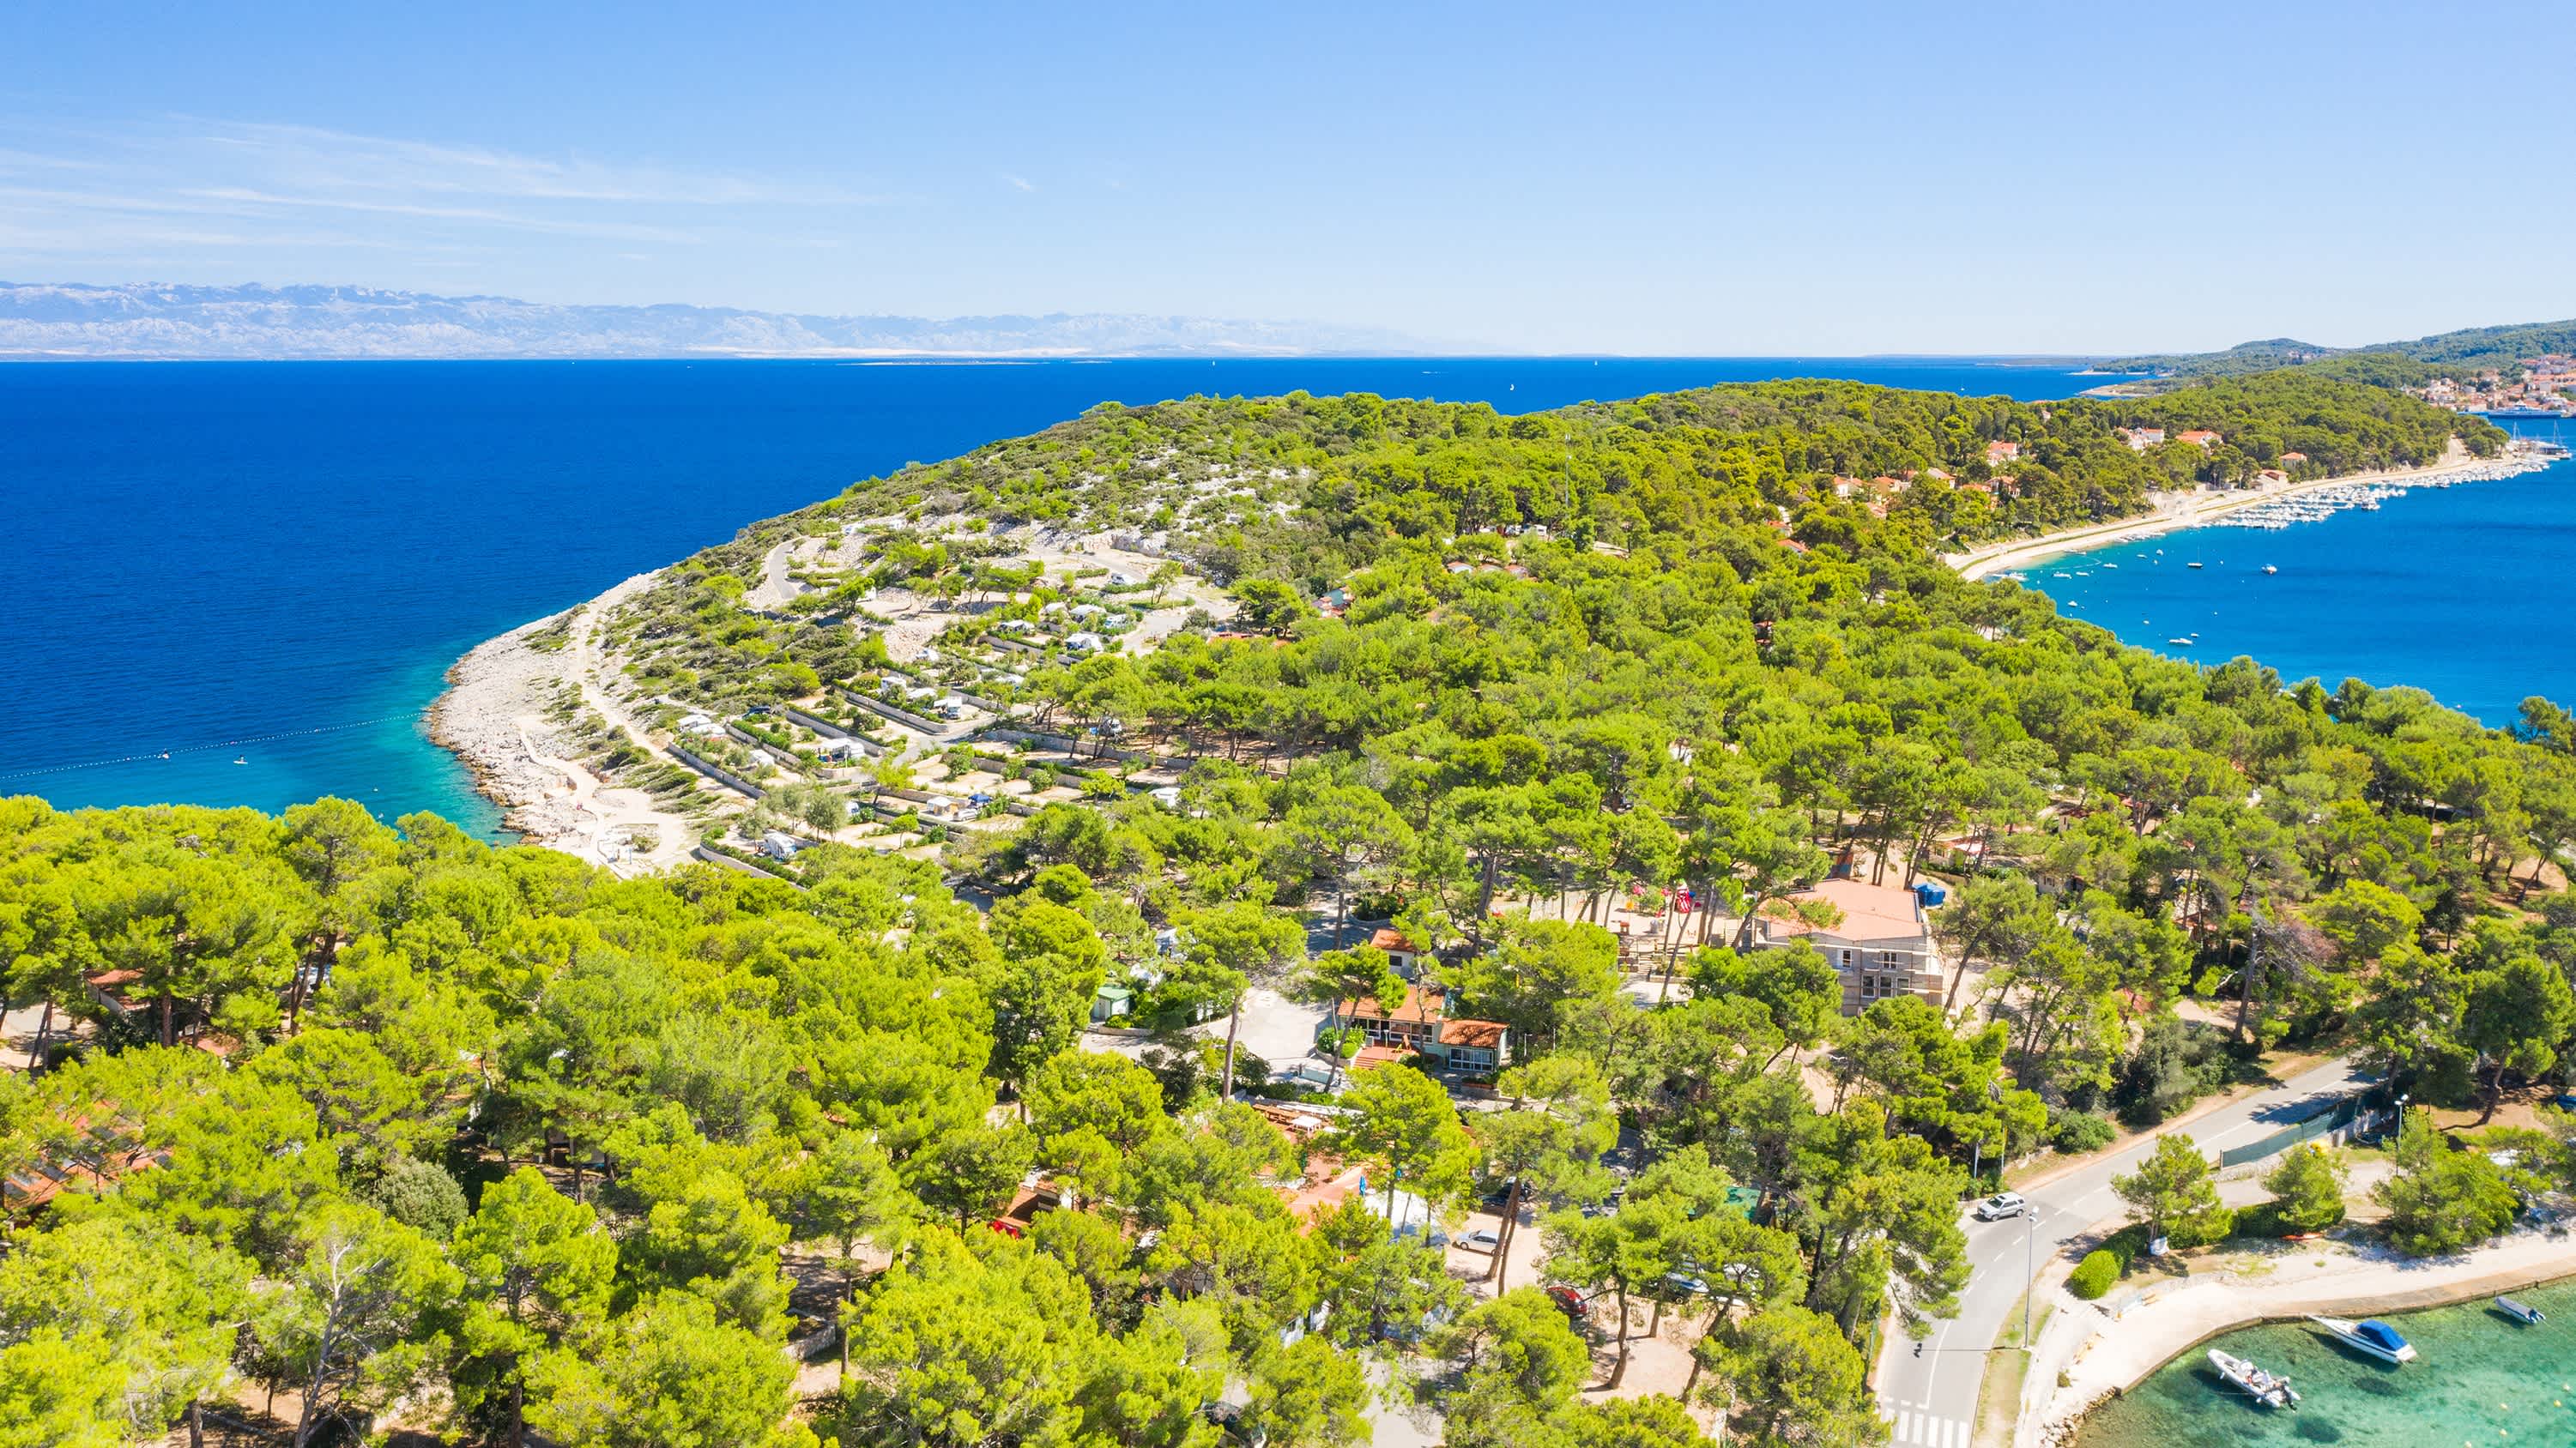 Luftaufnahme der grünen Adriaküste auf der Insel Losinj, Kvarner Bucht, Istrien, Kroatien.

